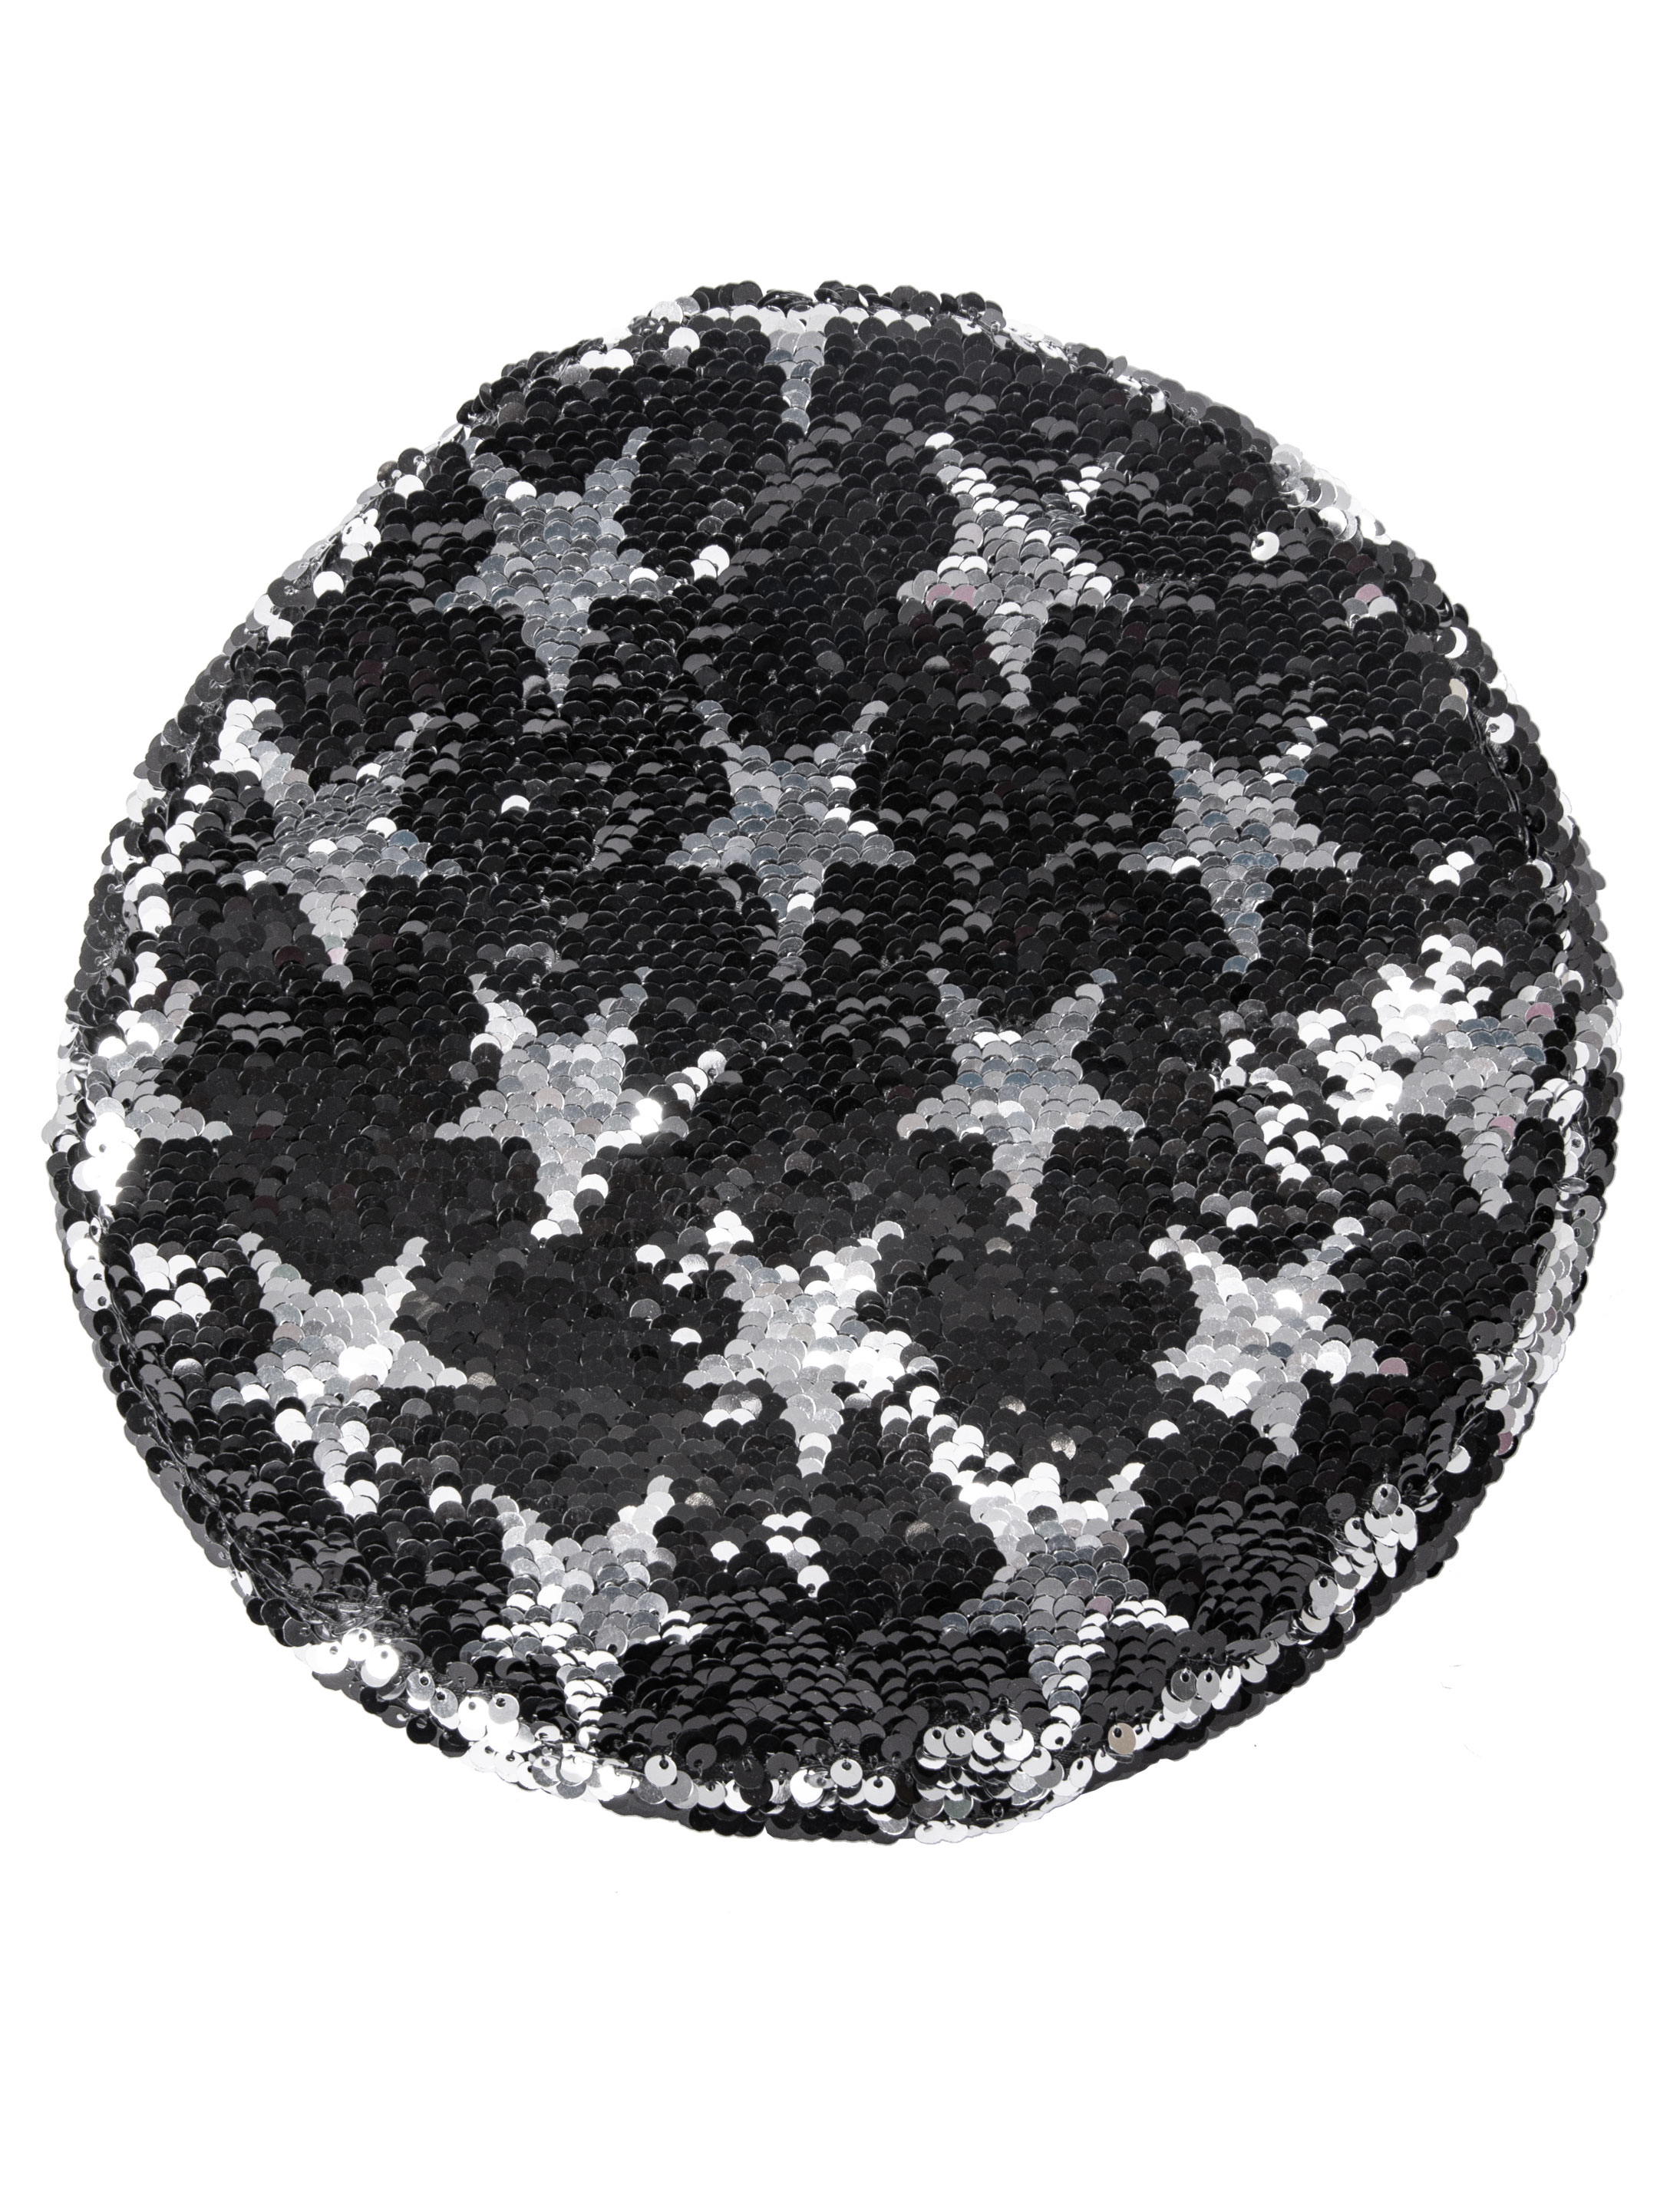 Paillettenhut mit silbernen Sternen schwarz/silber one size